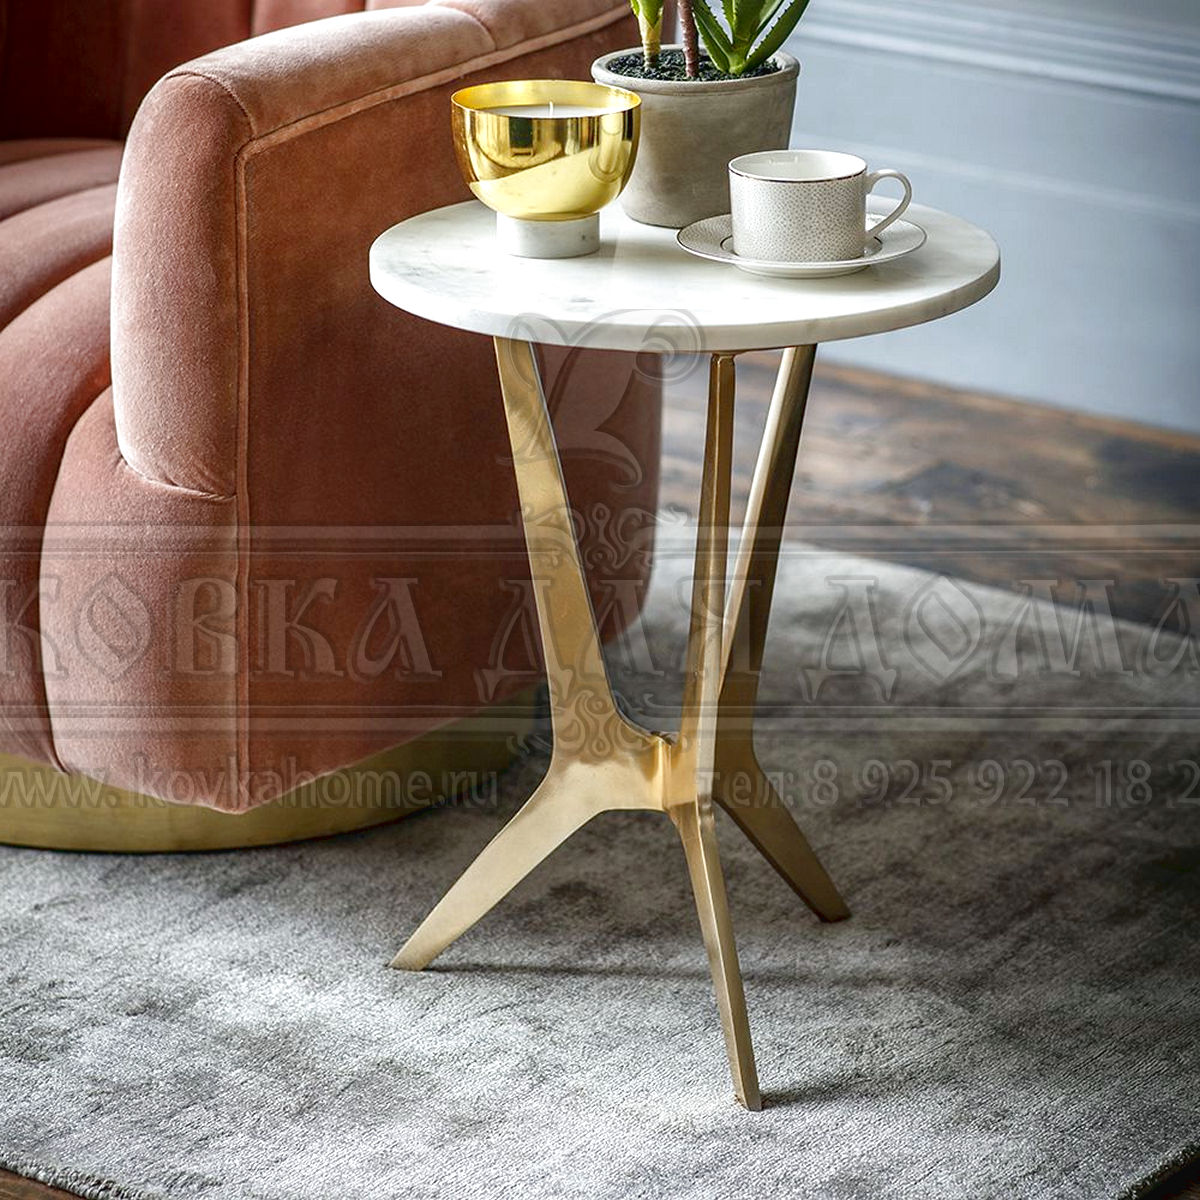 Столик к дивану или к кровати маленький круглый в современном стиле, можно использовать как кофейный, размеры 800(H)хd400мм. Так как изделия делаются вручную на заказ, то учитываются все пожелания заказчика.